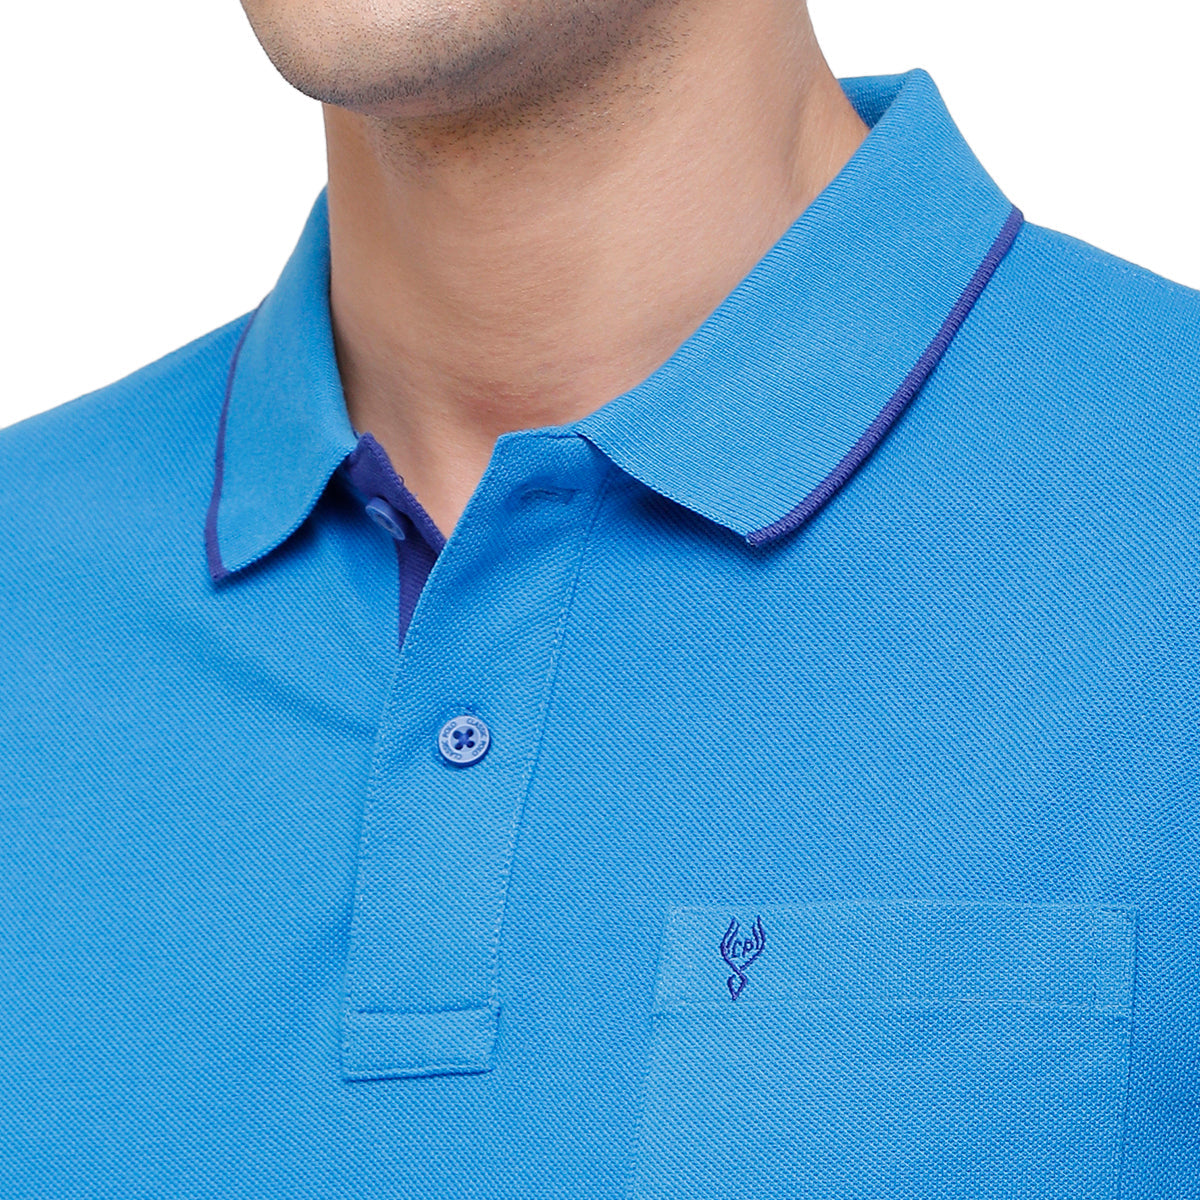 Classic polo Men's Oxford Blue Smart Double Pique Polo Half Sleeve Authentic Fit T-Shirt Nova - Oxford T-shirt Classic Polo 